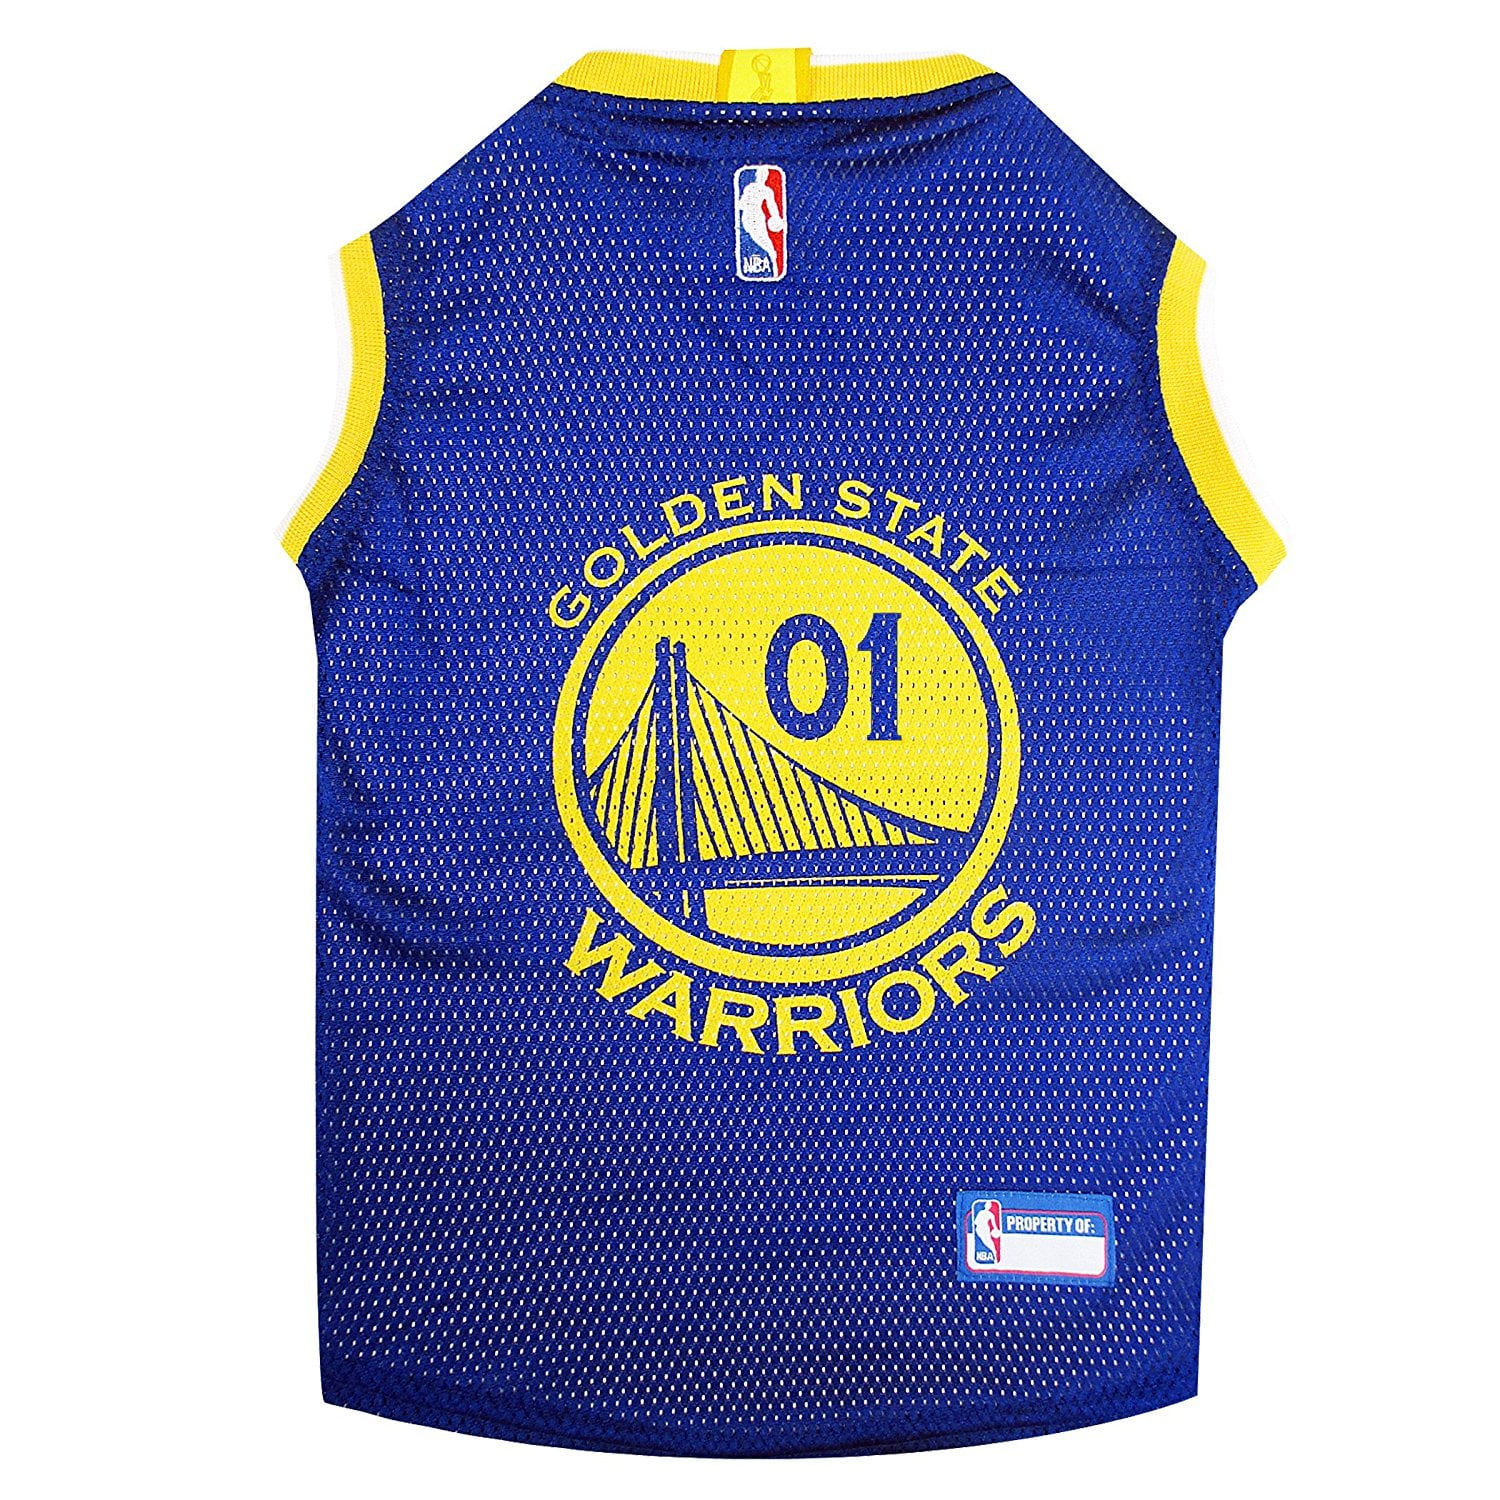 Official Golden State Warriors Jerseys, Warriors Basketball Jerseys